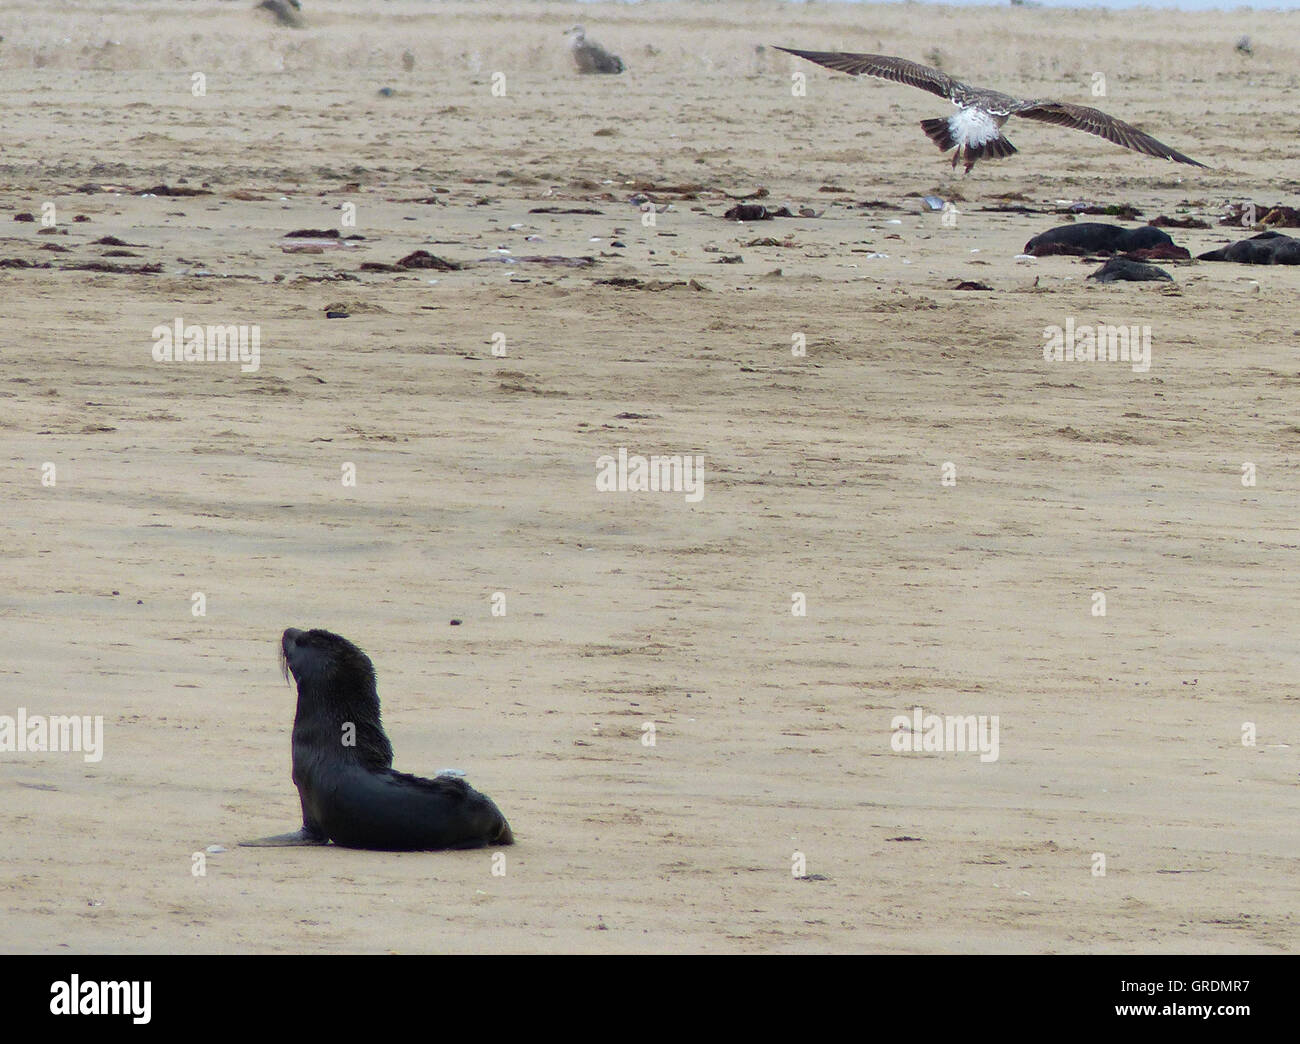 Dietro un uccello immagini e fotografie stock ad alta risoluzione - Alamy